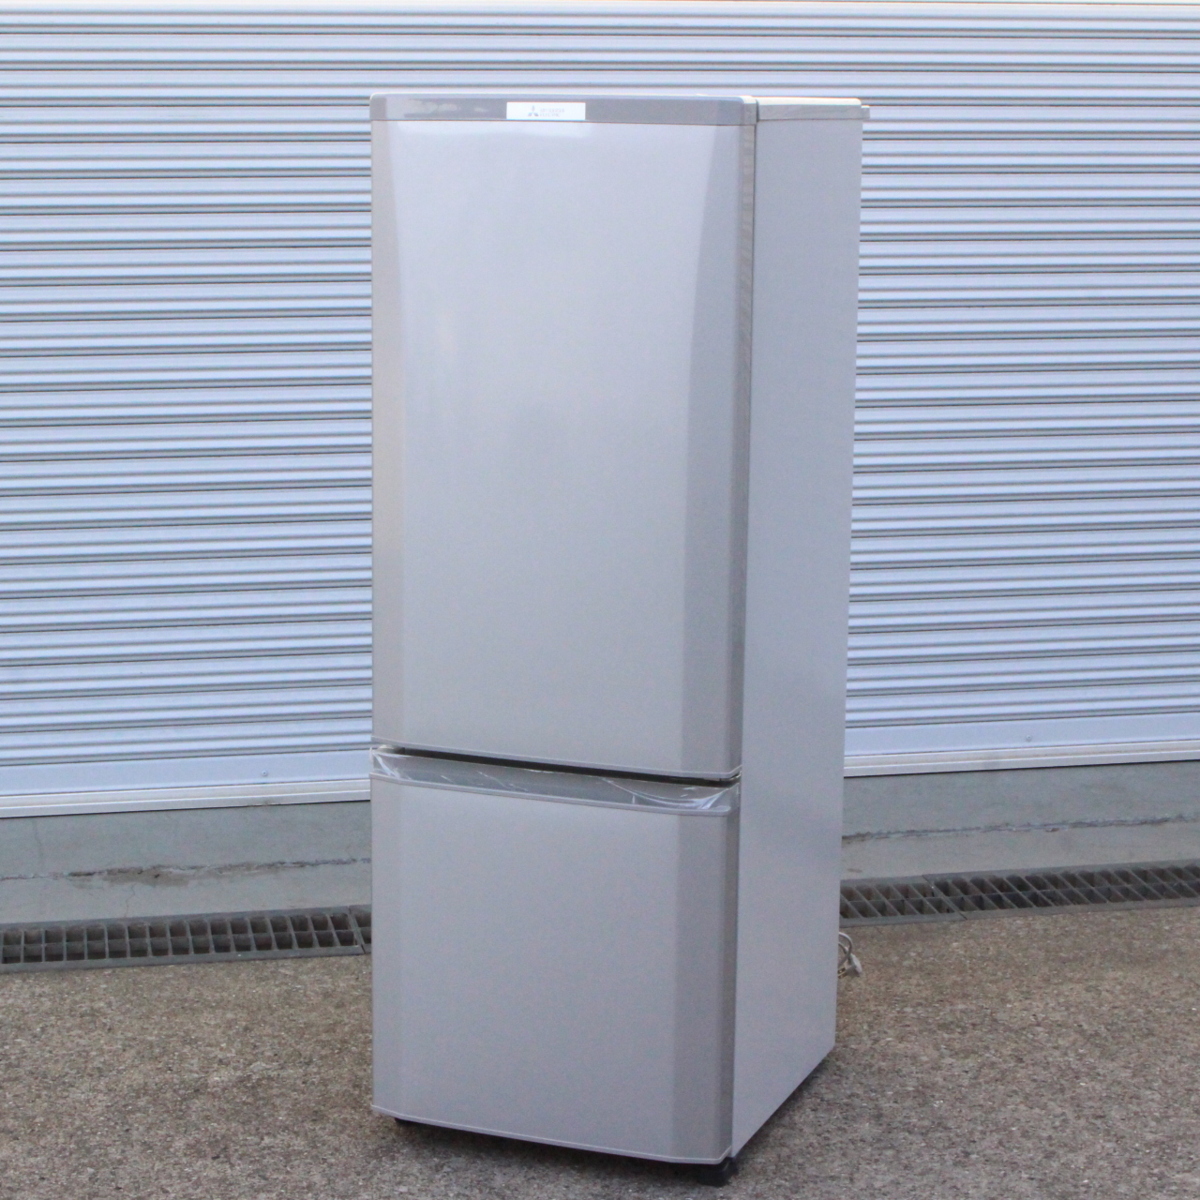 川崎市宮前区にて 三菱 冷蔵庫 MR-P17A-S 2017年製 を出張買取させて頂きました。